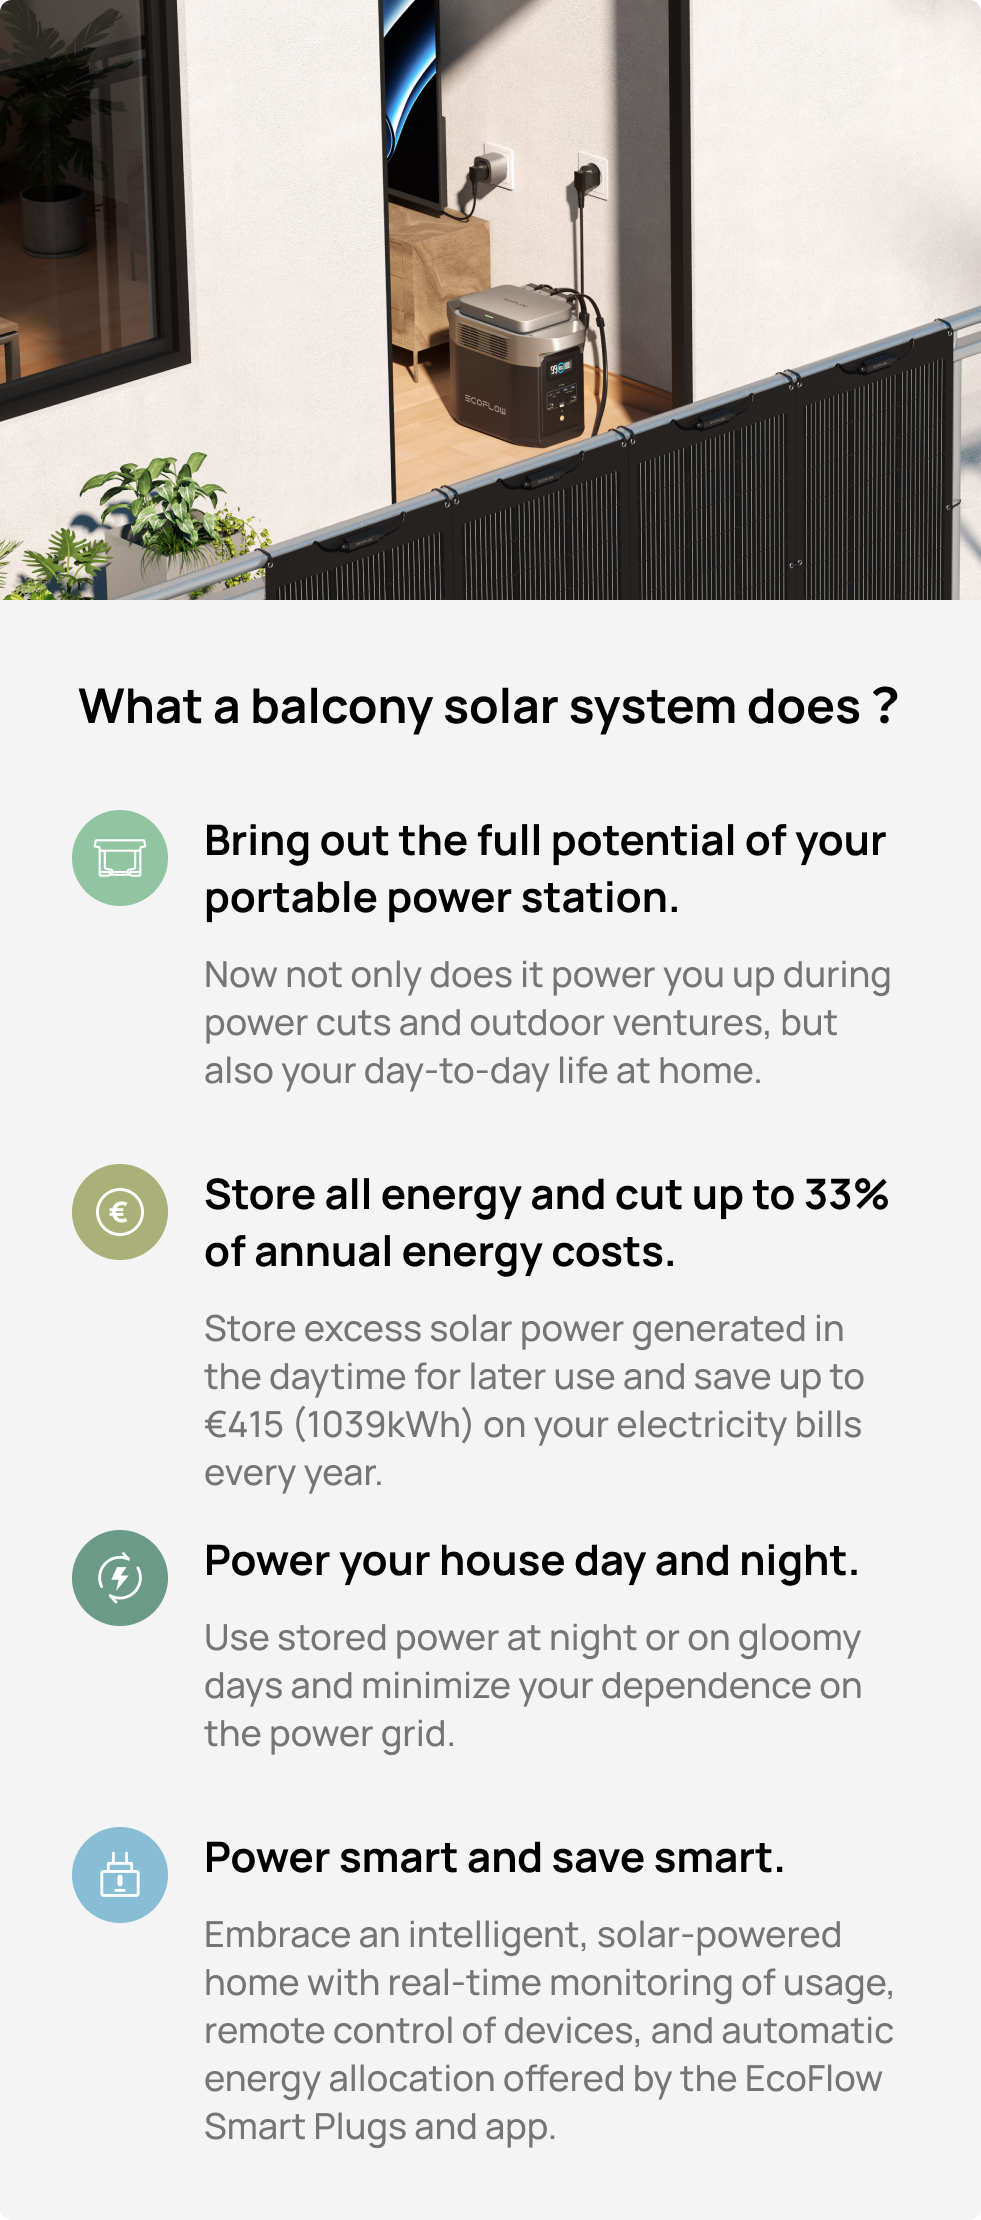 Works in Sync with EcoFlow PowerStream Balcony Solar System